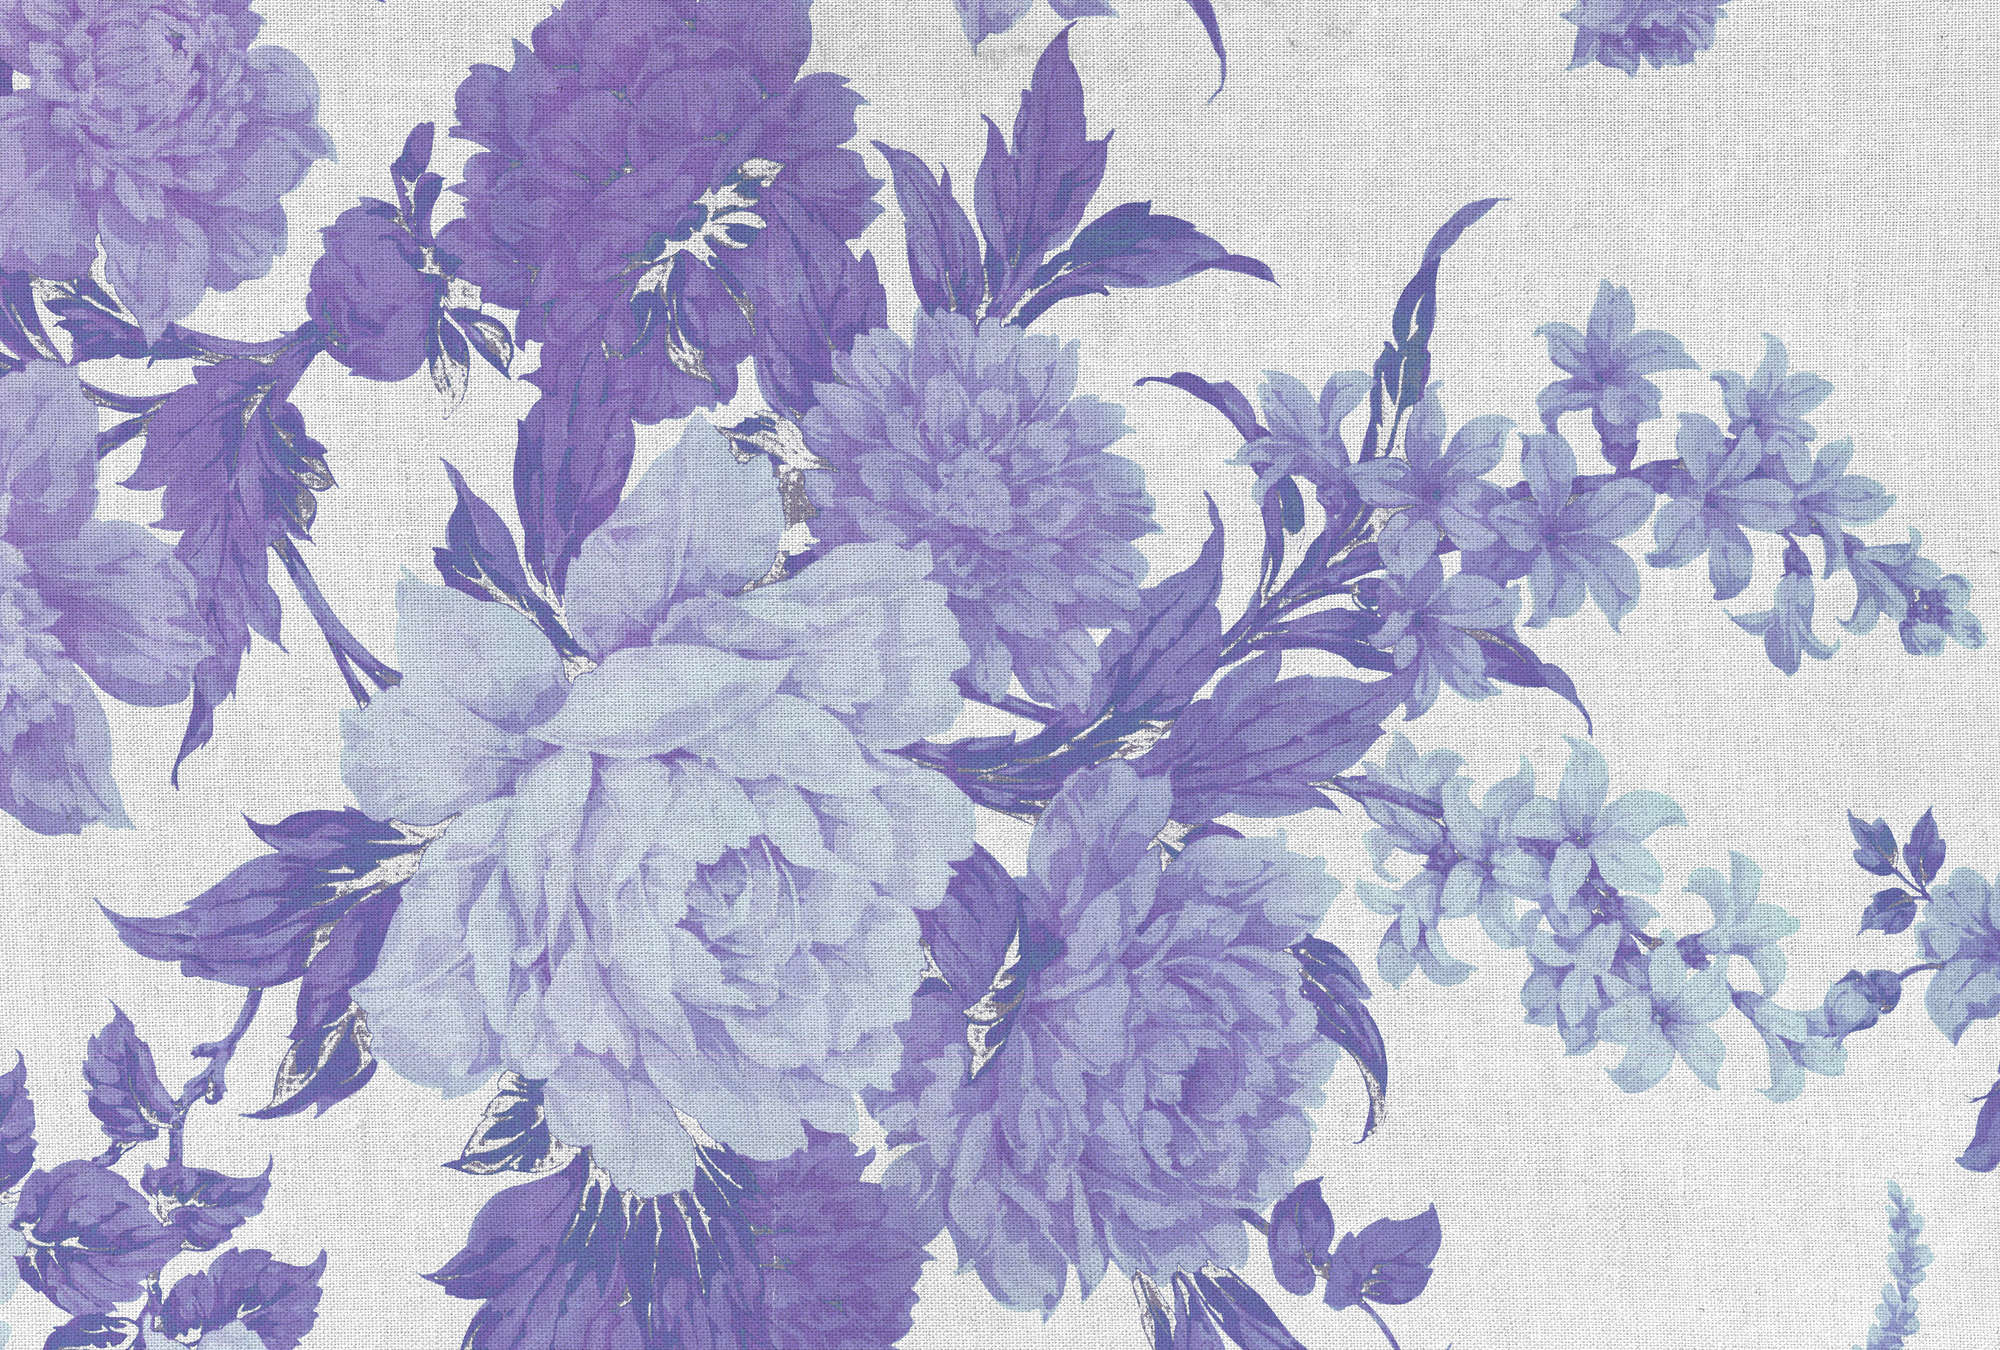             Rozen, Bloemen Ornament & Textiel Look Behang - Paars, Blauw, Wit
        